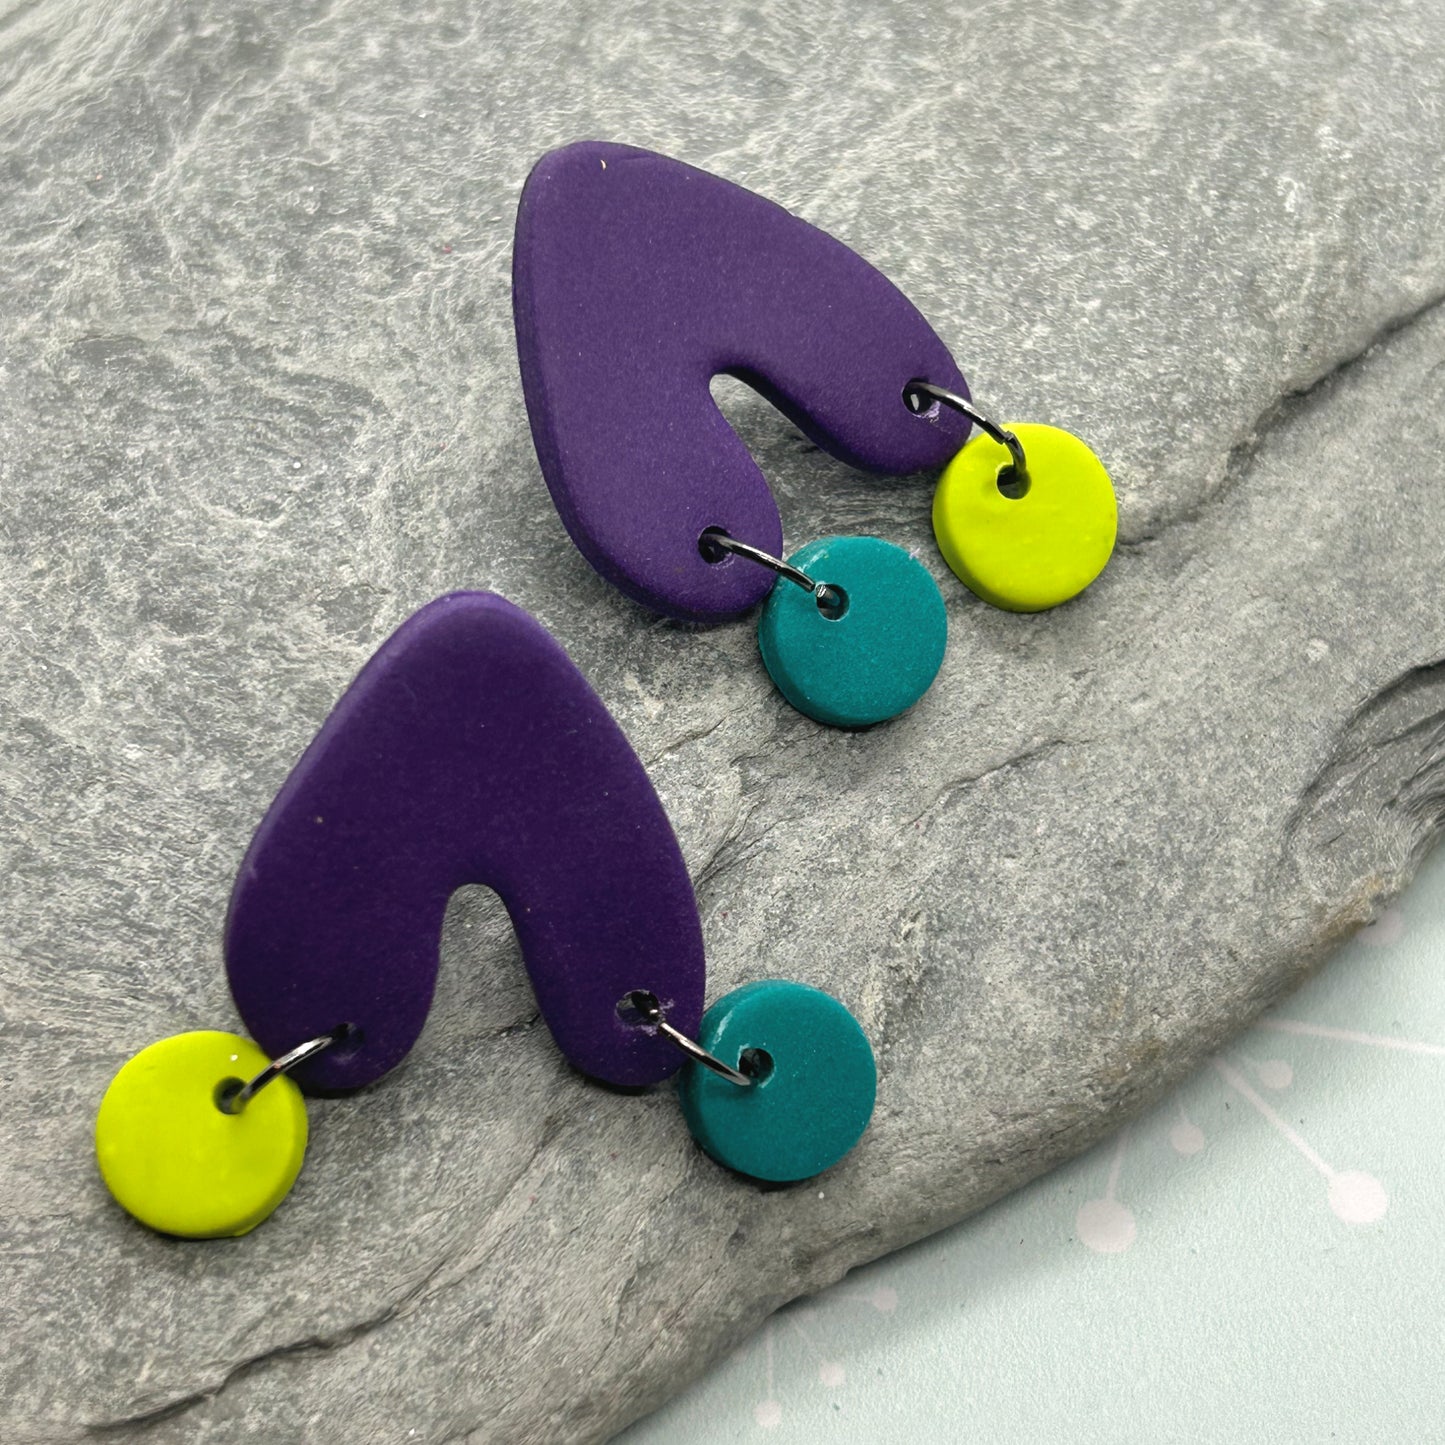 Upside heart stud earrings - The Argentum Design Co